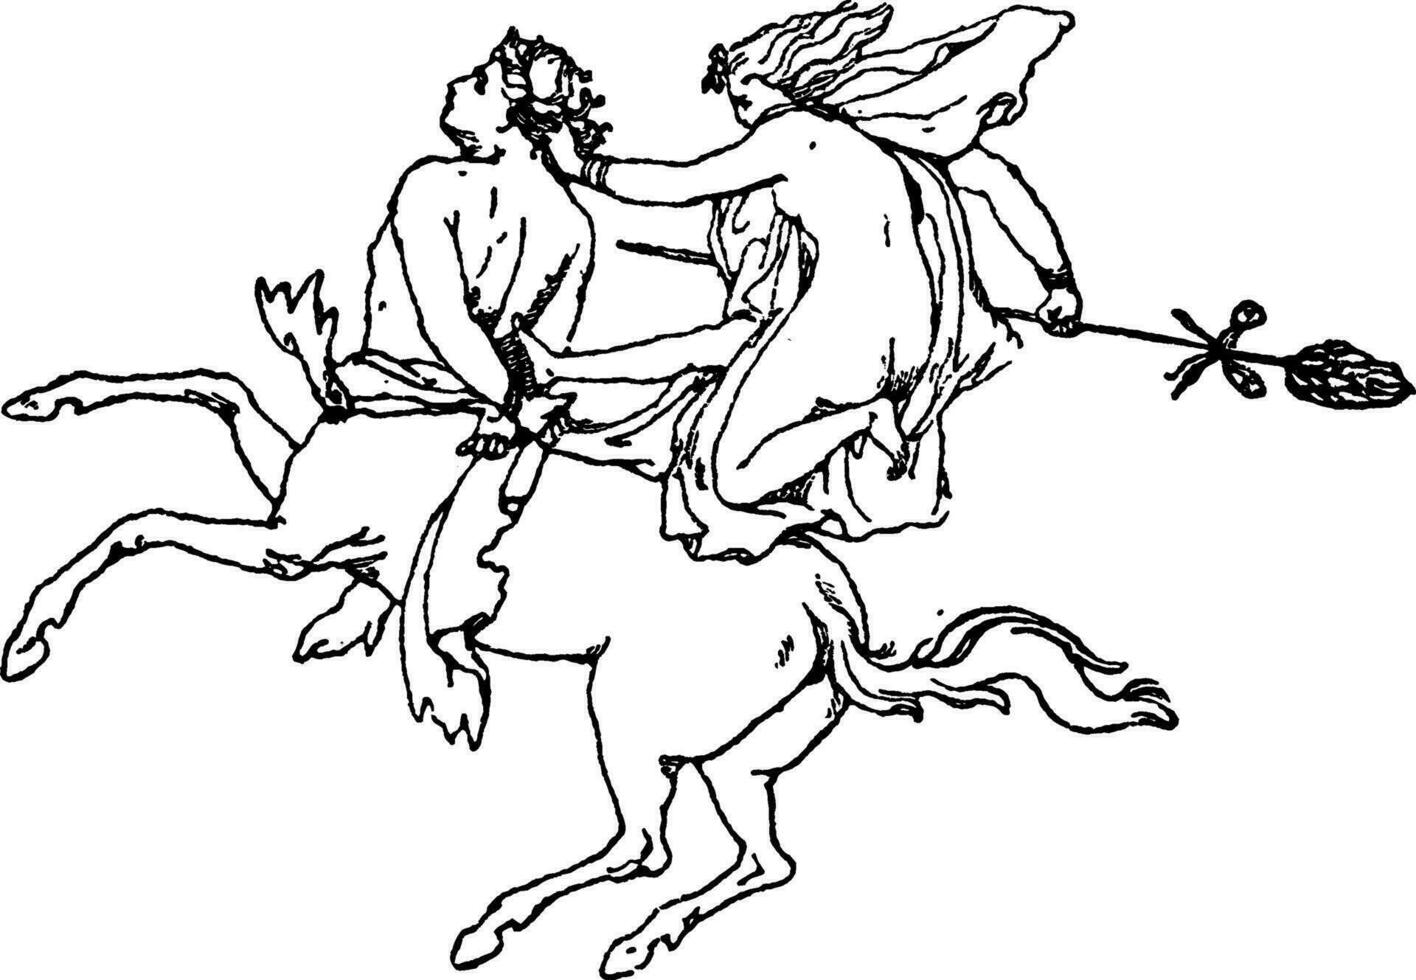 múltiple centuares y bacantes es imaginario salvaje monstruos con el delantero parte de un hombre y el impedir de un caballo, Clásico grabado. vector